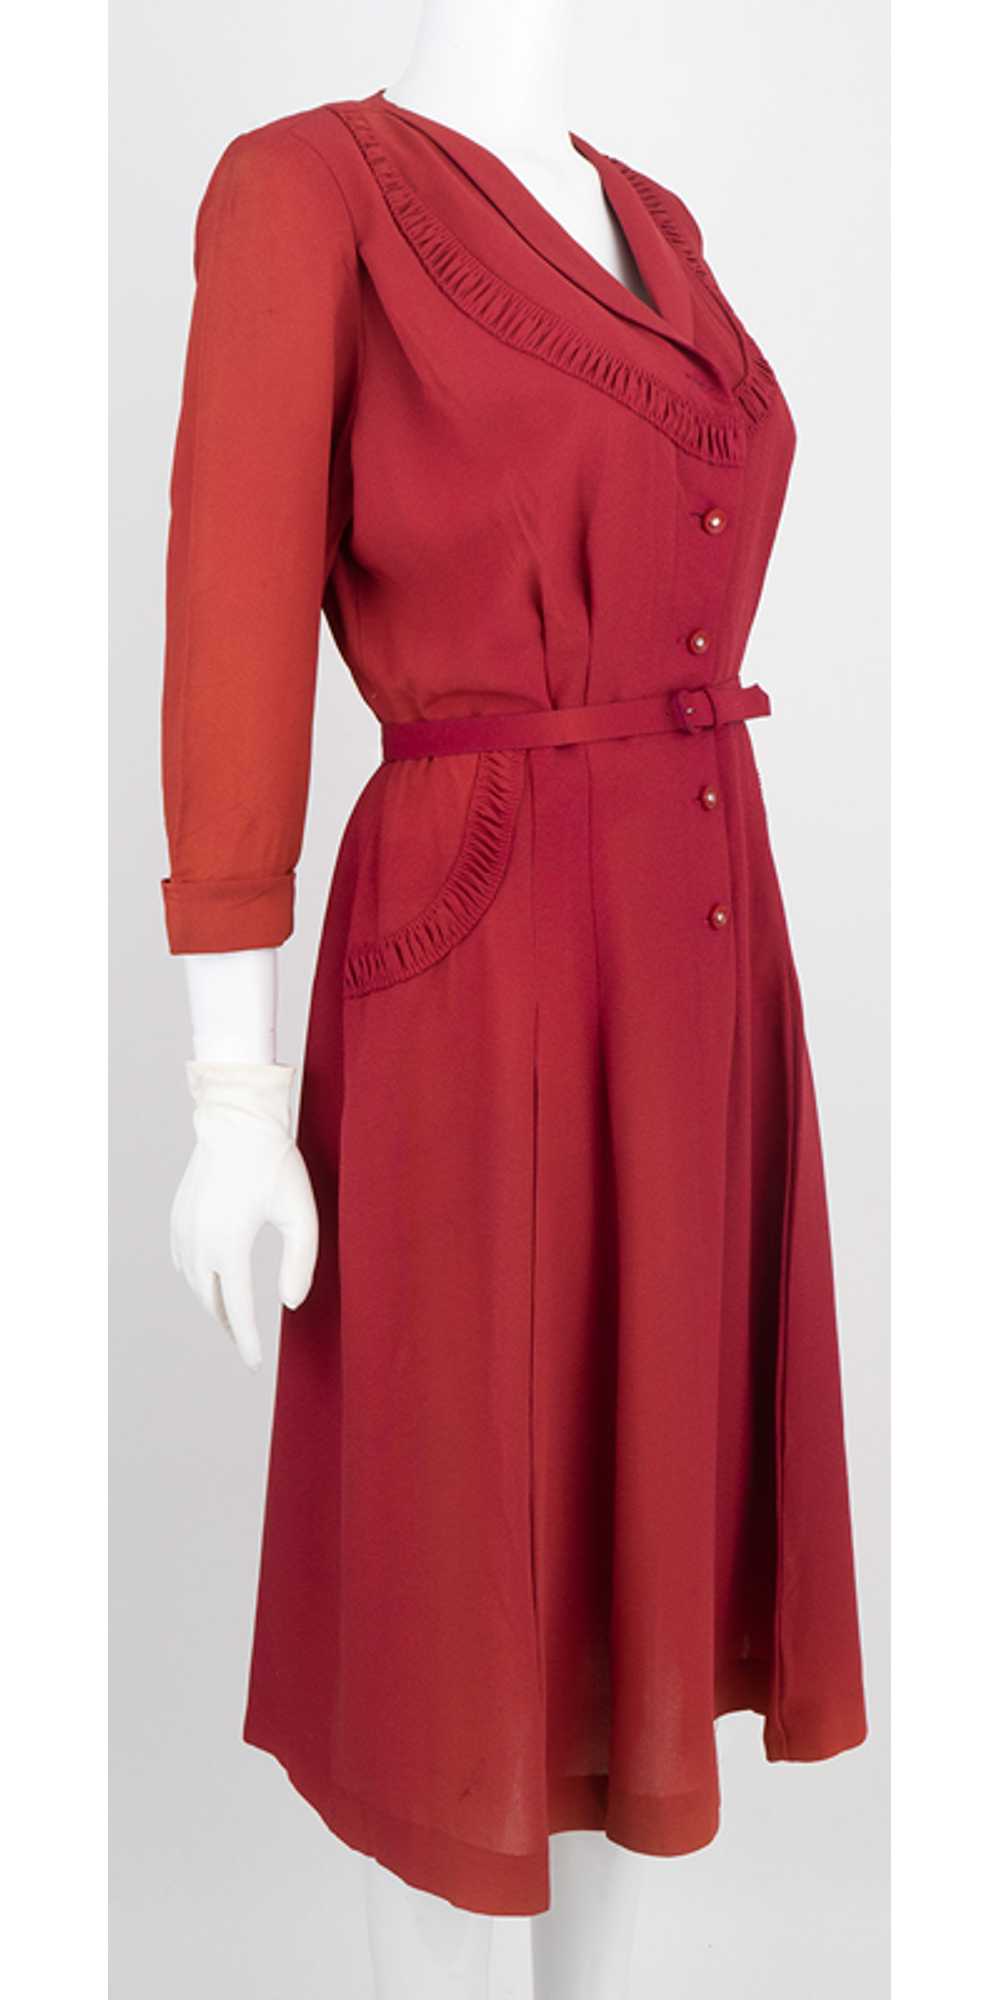 1940s Rayon Crepe Cocktail Dress - image 1